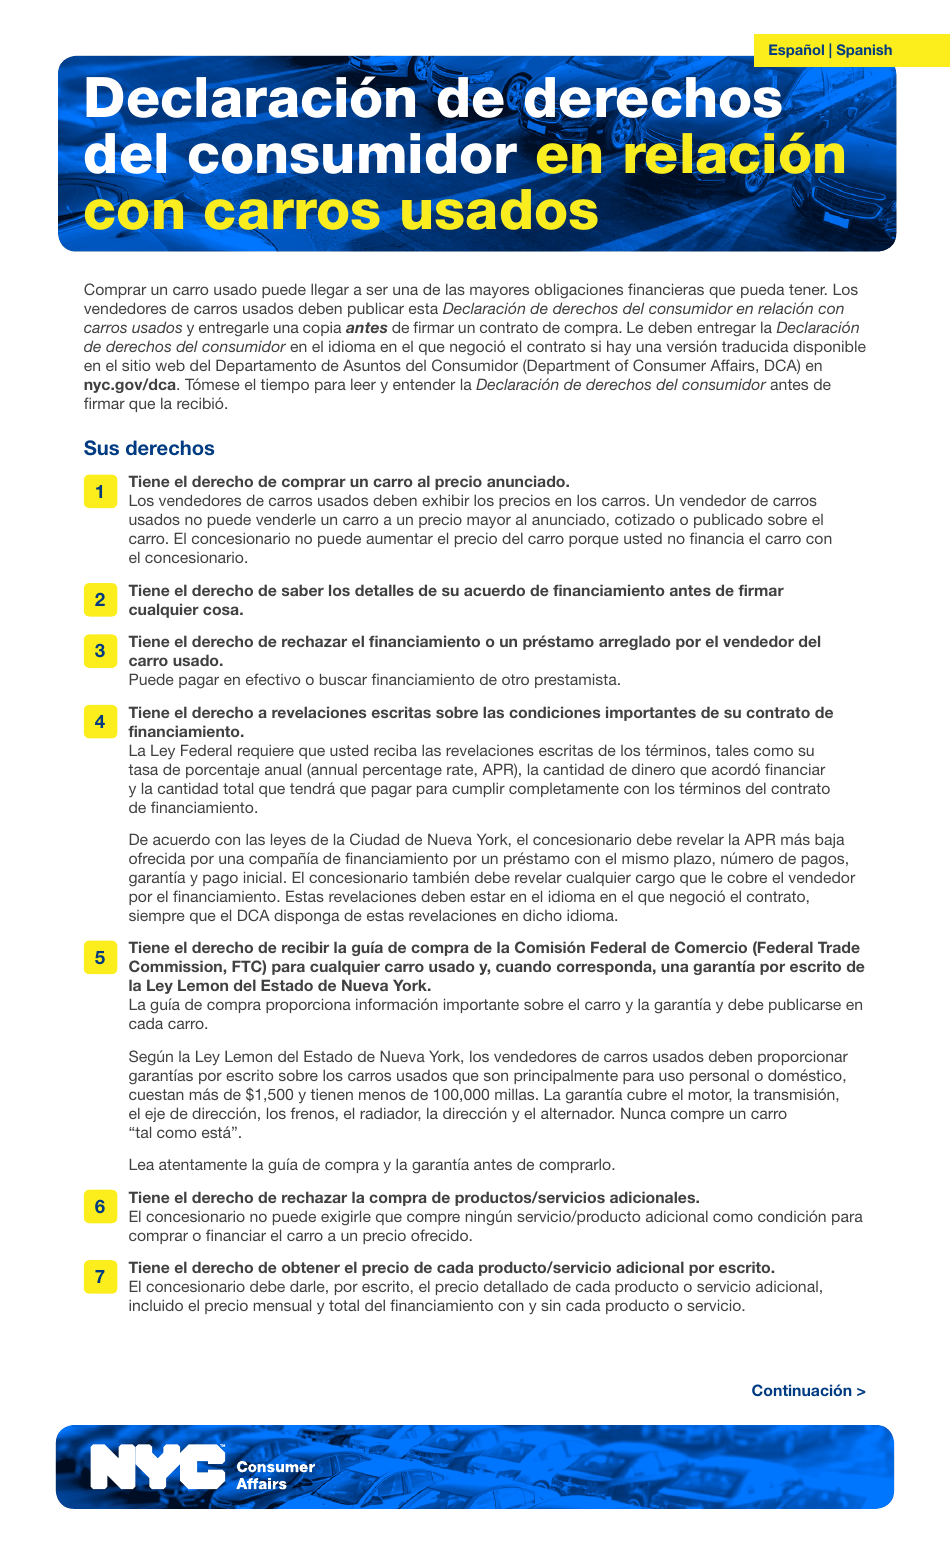 Declaracion De Derechos Del Consumidor En Relacion Con Carros Usados - New York City (Spanish), Page 1